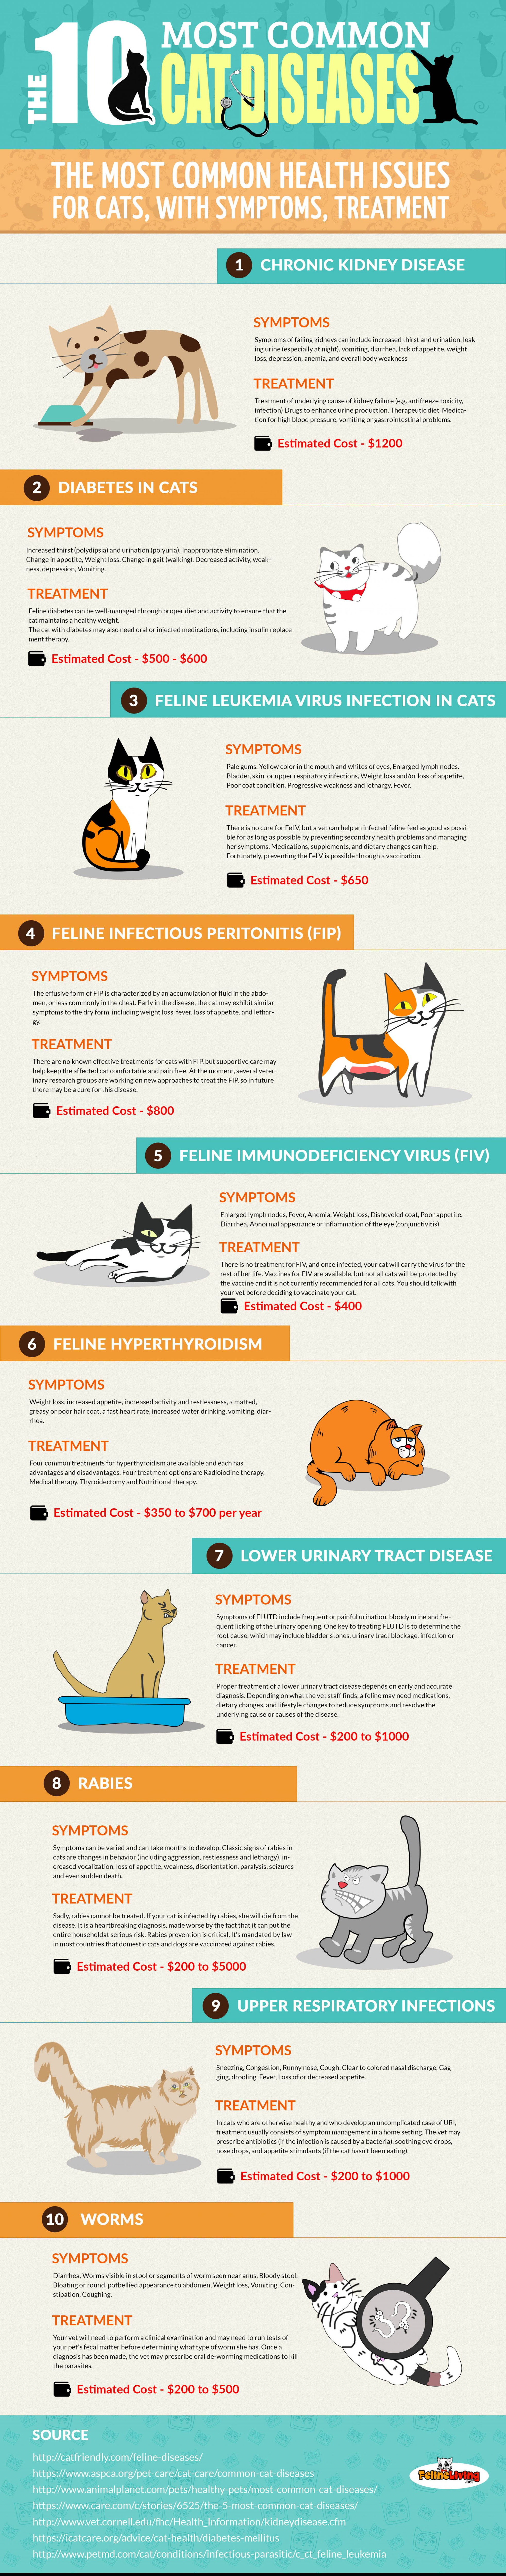 Common Cat Diseases infographic raw